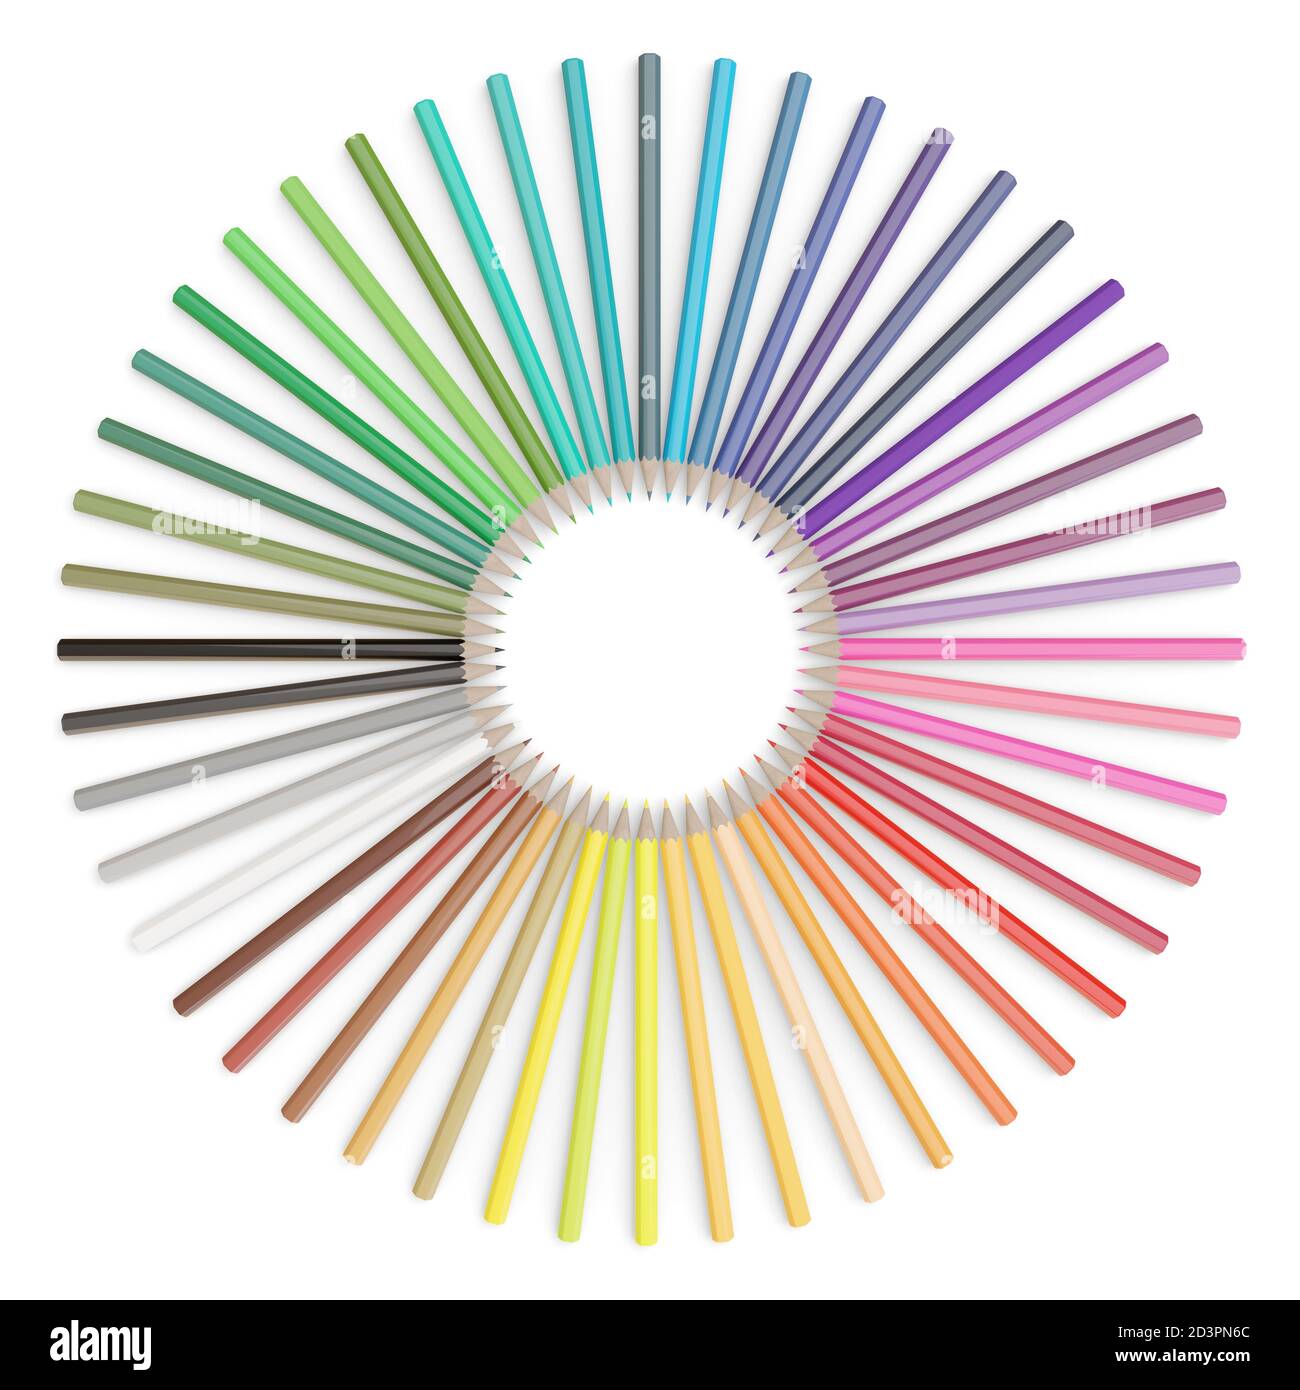 Juego de lápices de colores dispuestos en un círculo sobre fondo blanco. ilustración 3d. Foto de stock